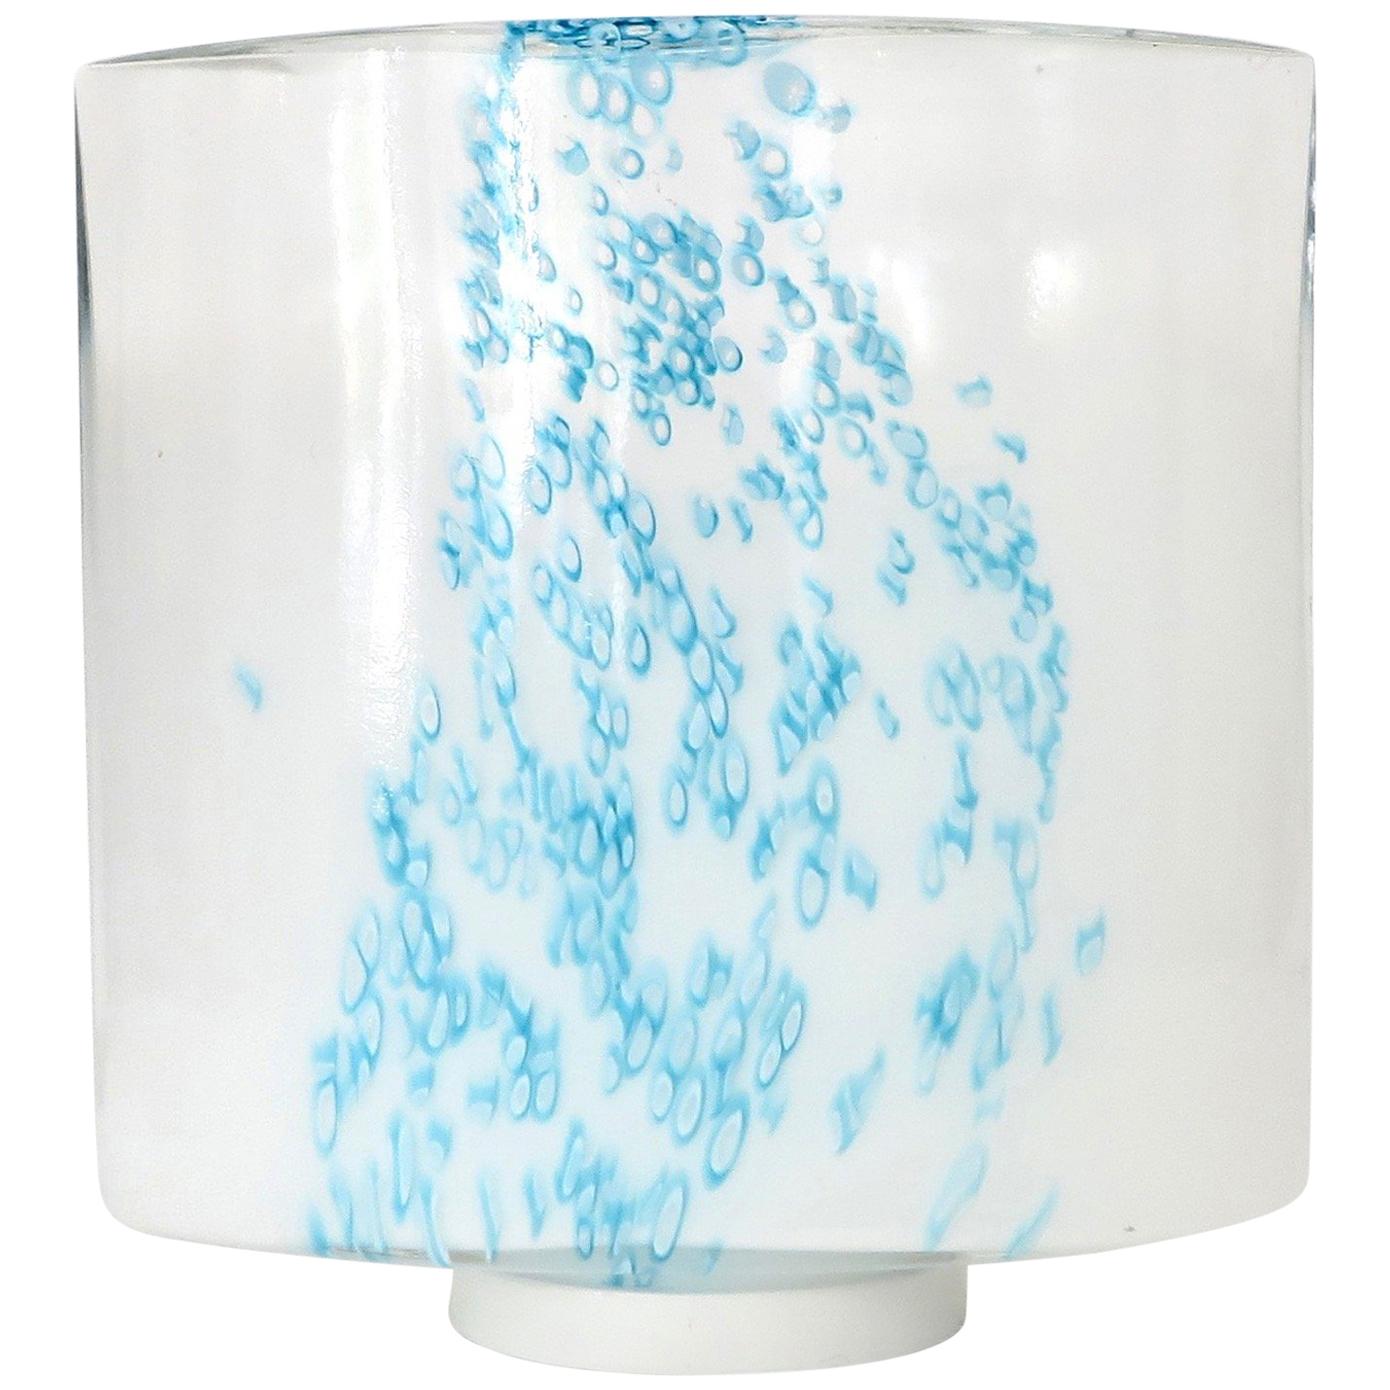 Türkisblaue Muranoglas-Tischlampe von Leucos, Dekoration aus undurchsichtigem Glas